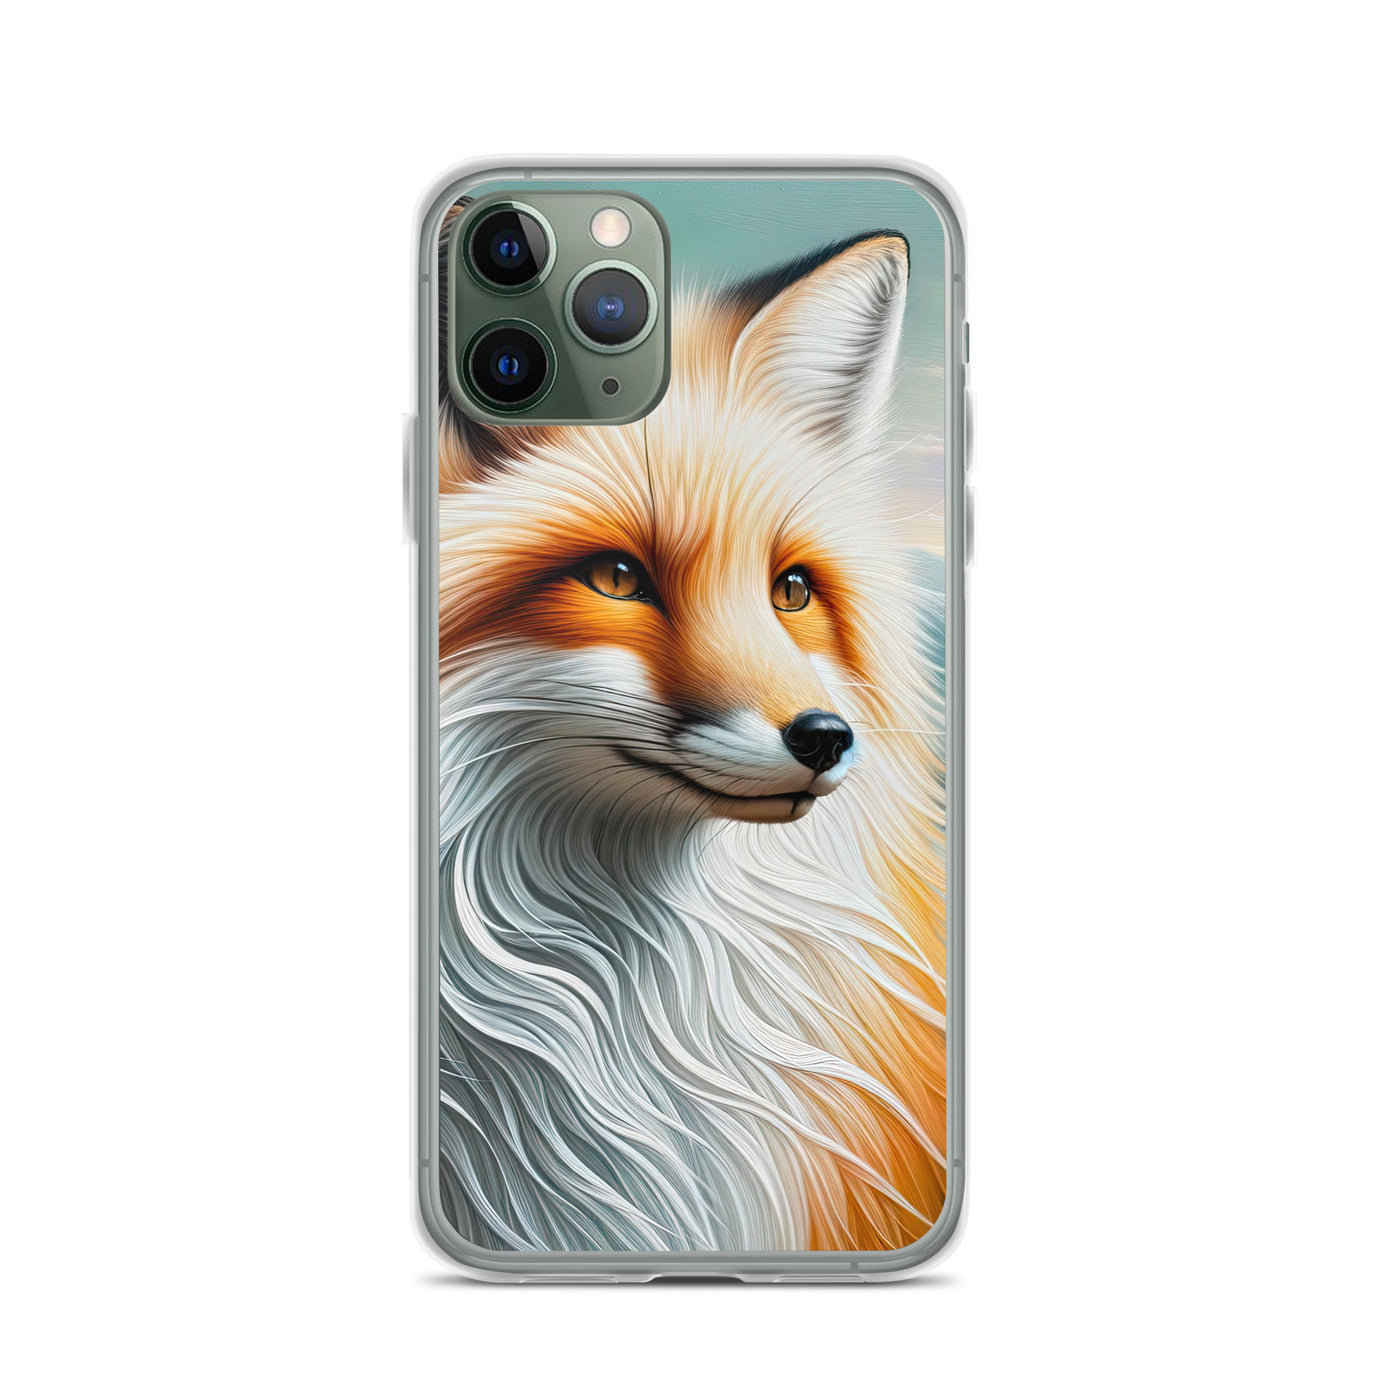 Ölgemälde eines anmutigen, intelligent blickenden Fuchses in Orange-Weiß - iPhone Schutzhülle (durchsichtig) camping xxx yyy zzz iPhone 11 Pro